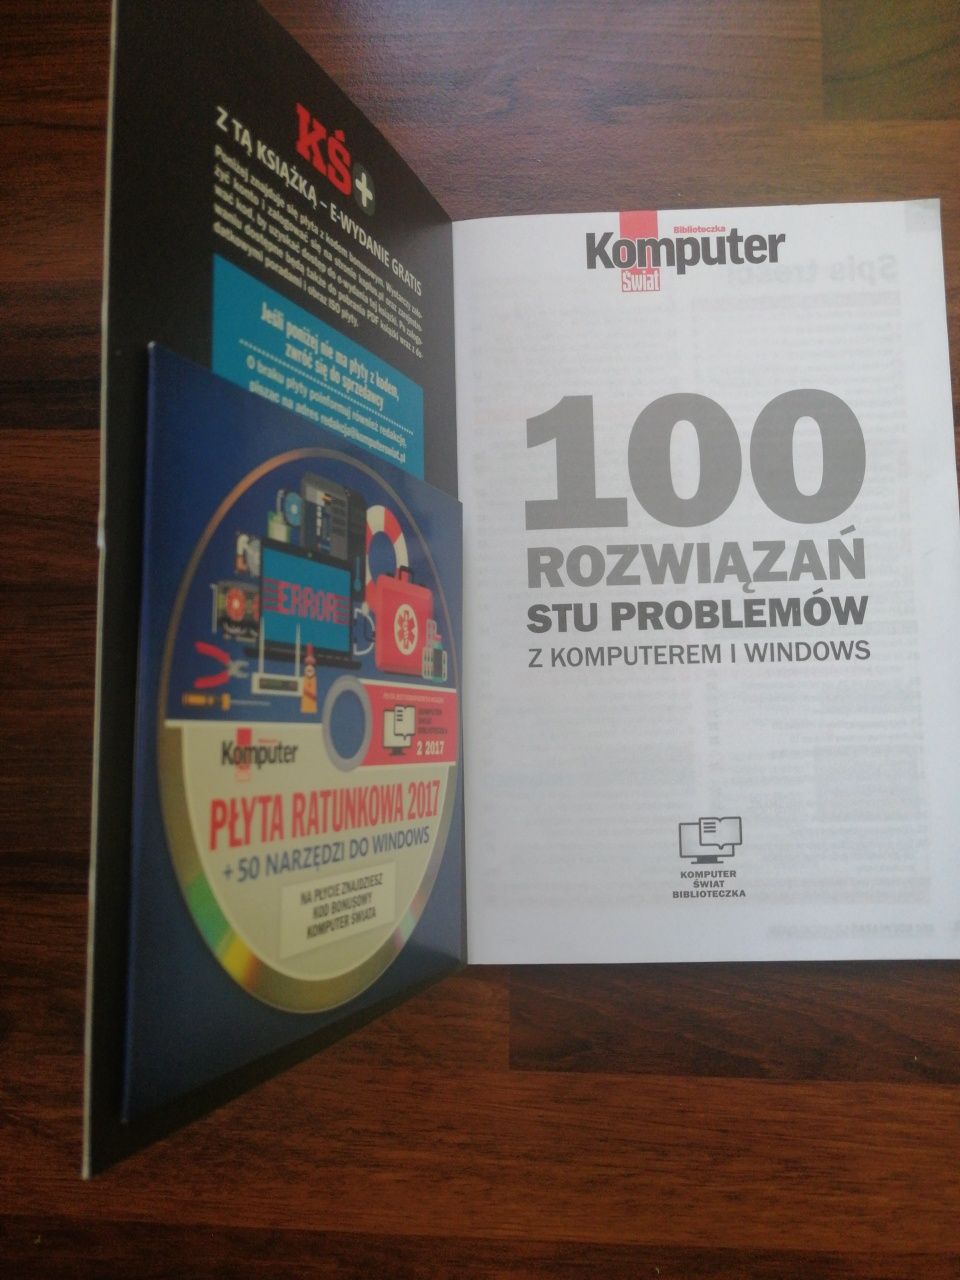 100 rozwiązań stu problemów z komputerem i Windows - Komputer Świat